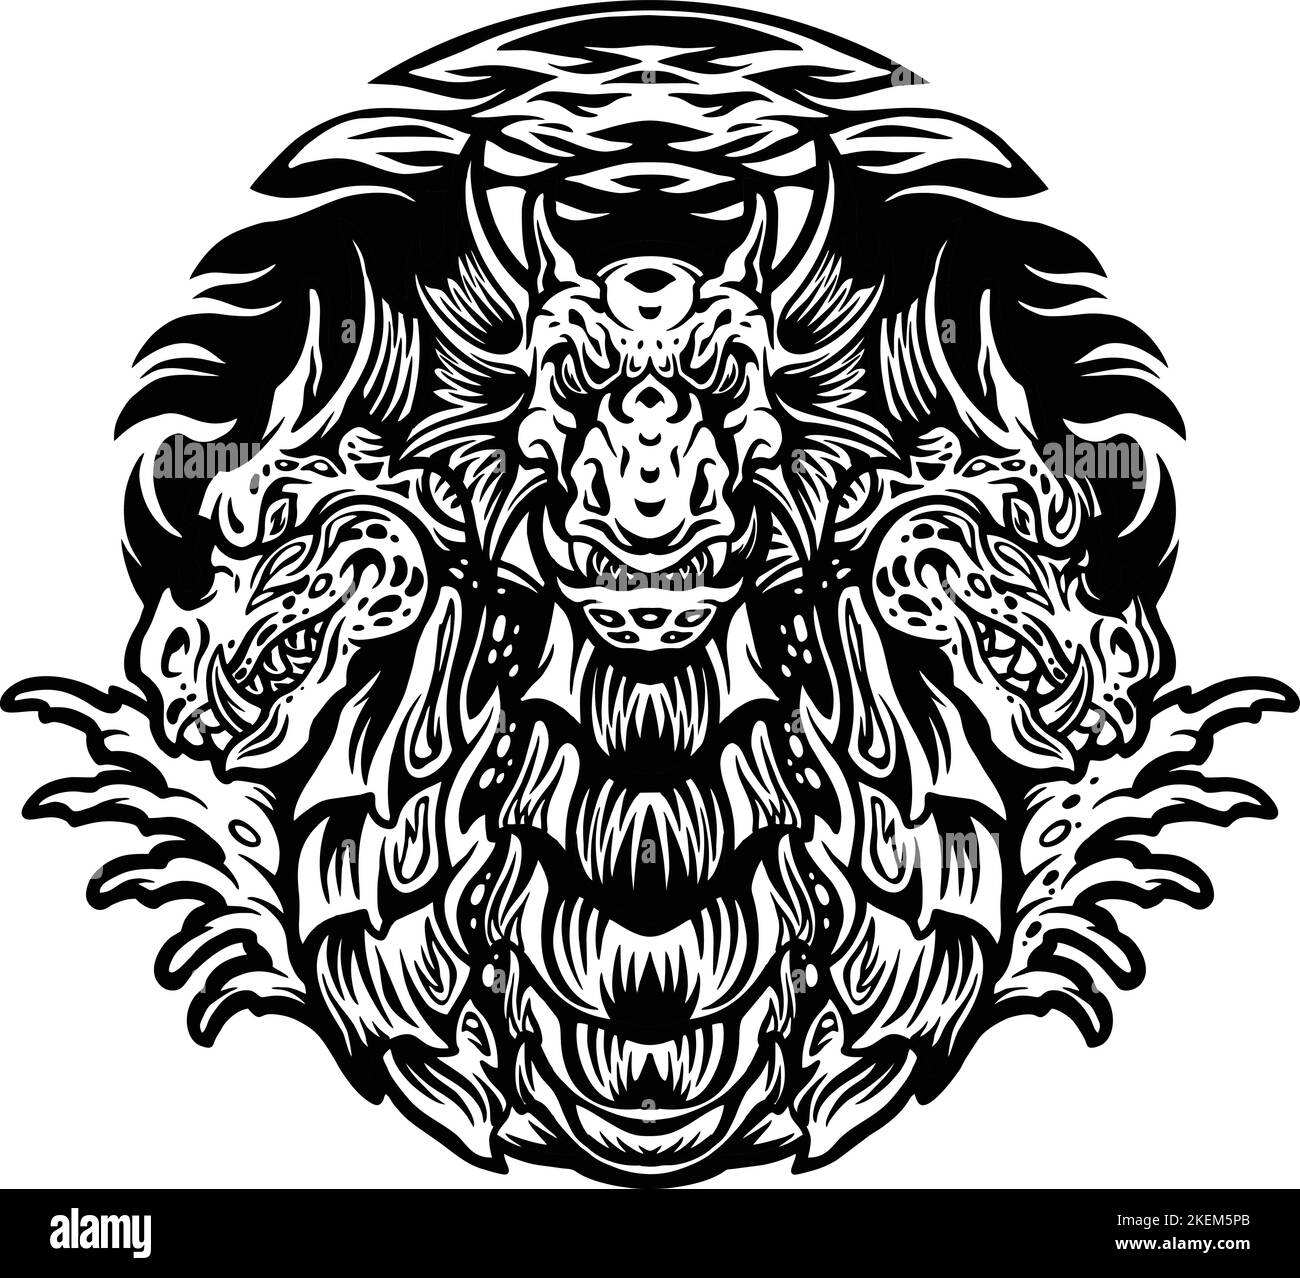 Silhouette Dragon Hydra personnage Mascot illustrations vectorielles pour votre logo de travail, t-shirt de marchandises, autocollants et étiquettes, poster Illustration de Vecteur